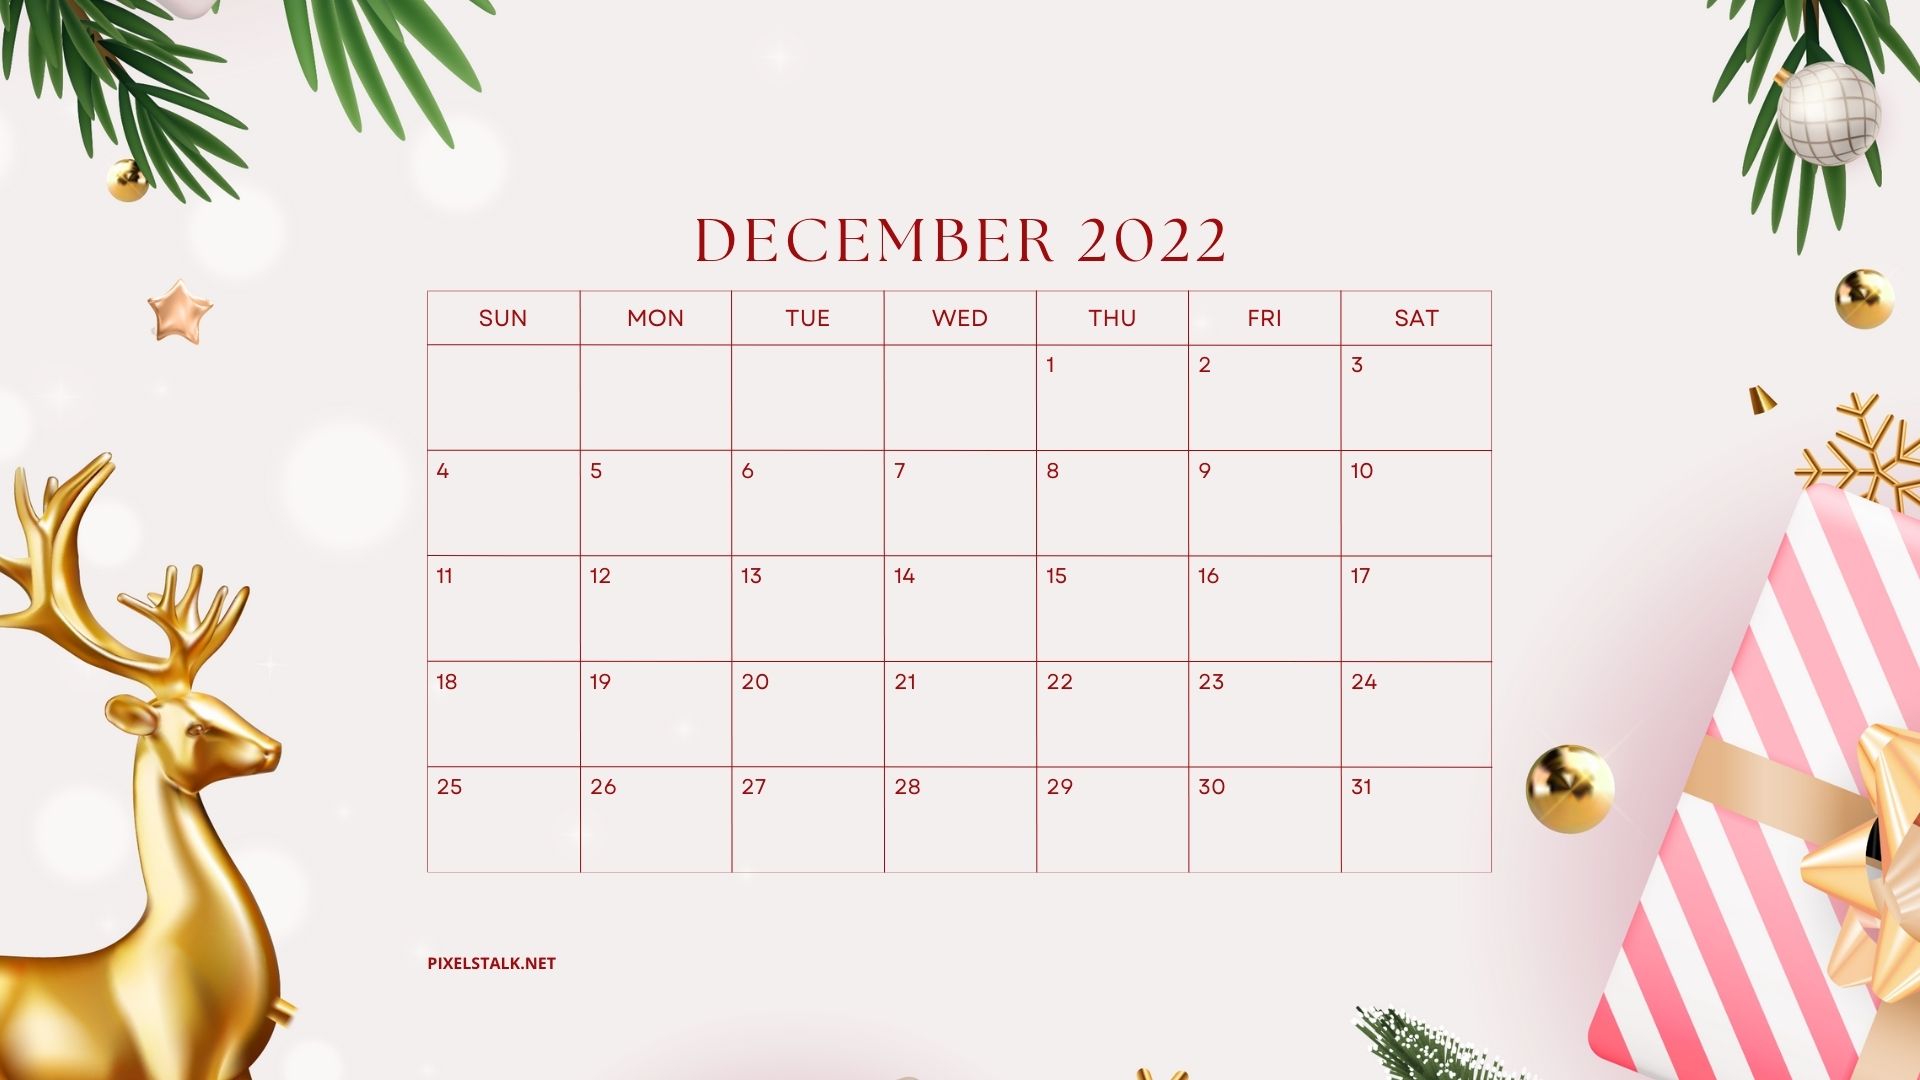 FREE DOWNLOAD DecemBER 2022 CALENDAR WALLPAPER  WeCrochet Staff Blog